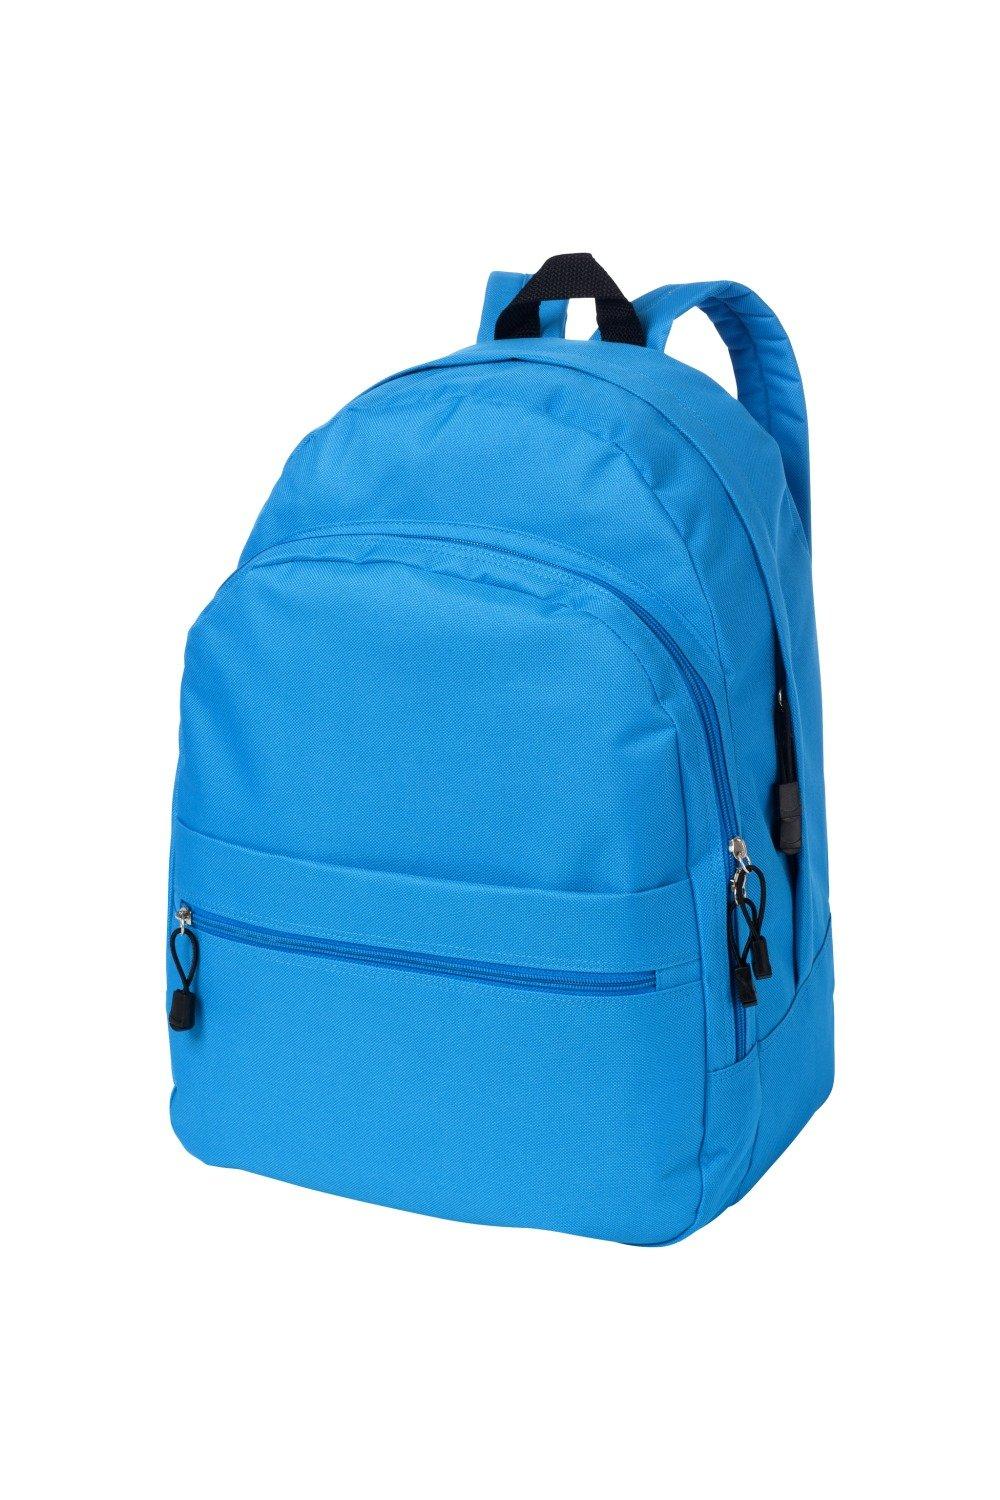 Трендовый рюкзак Bullet, синий универсальный сетчатый рюкзак унисекс с передним карманом оранжевый камуфляж